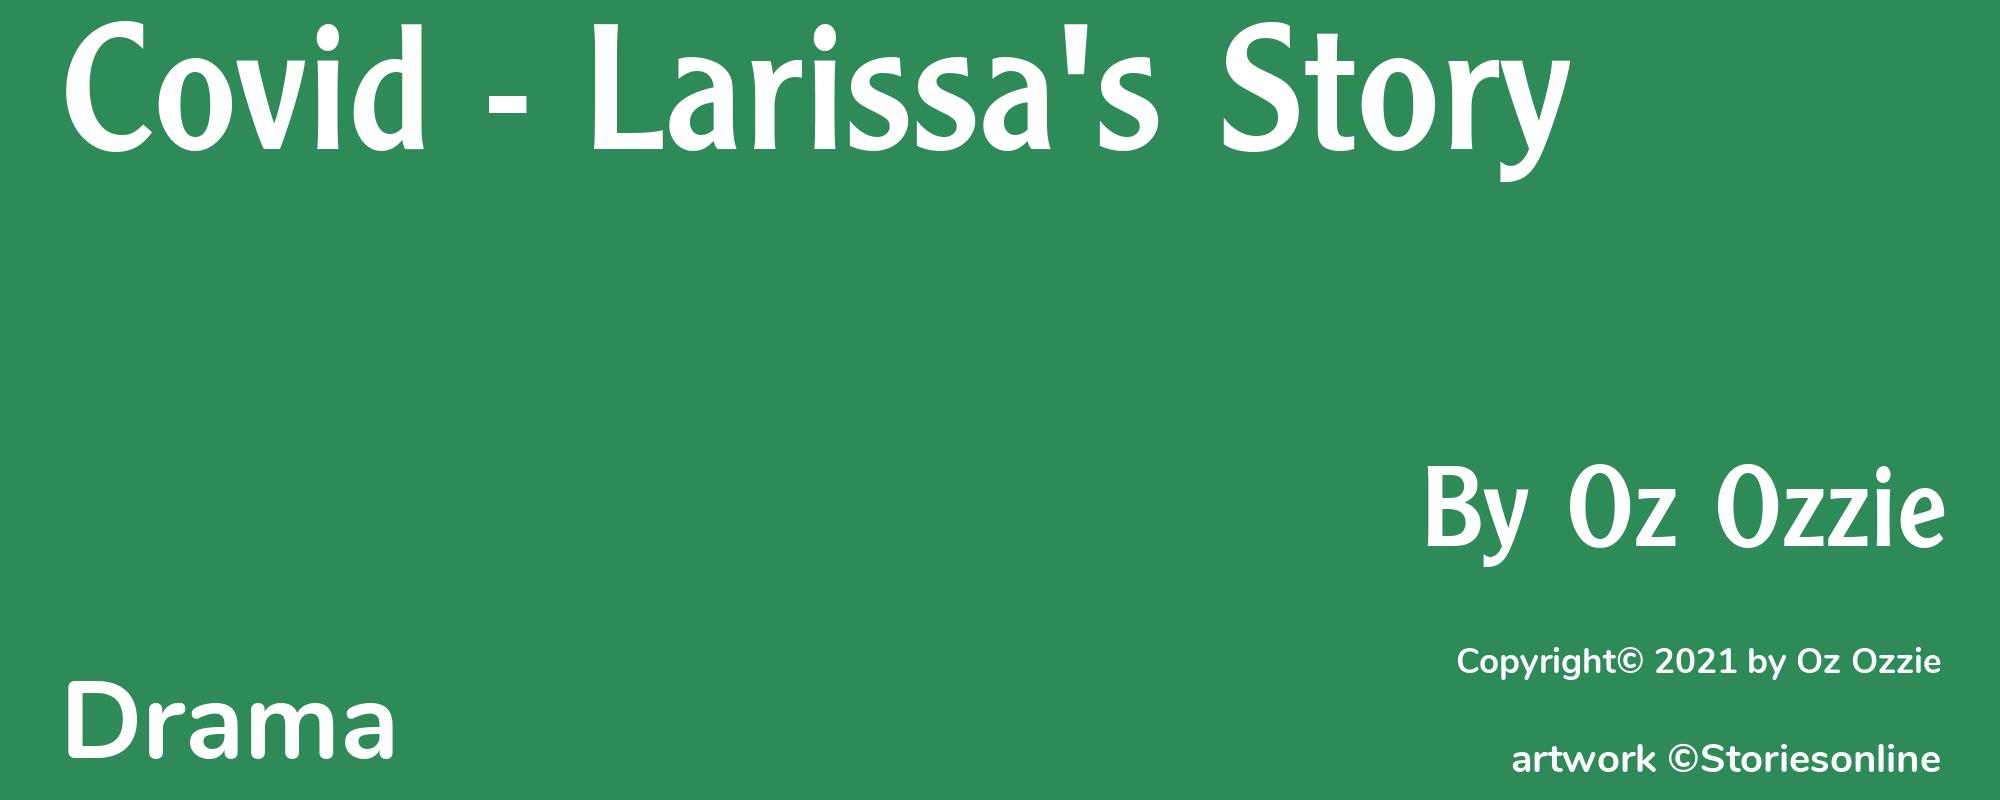 Covid - Larissa's Story - Cover